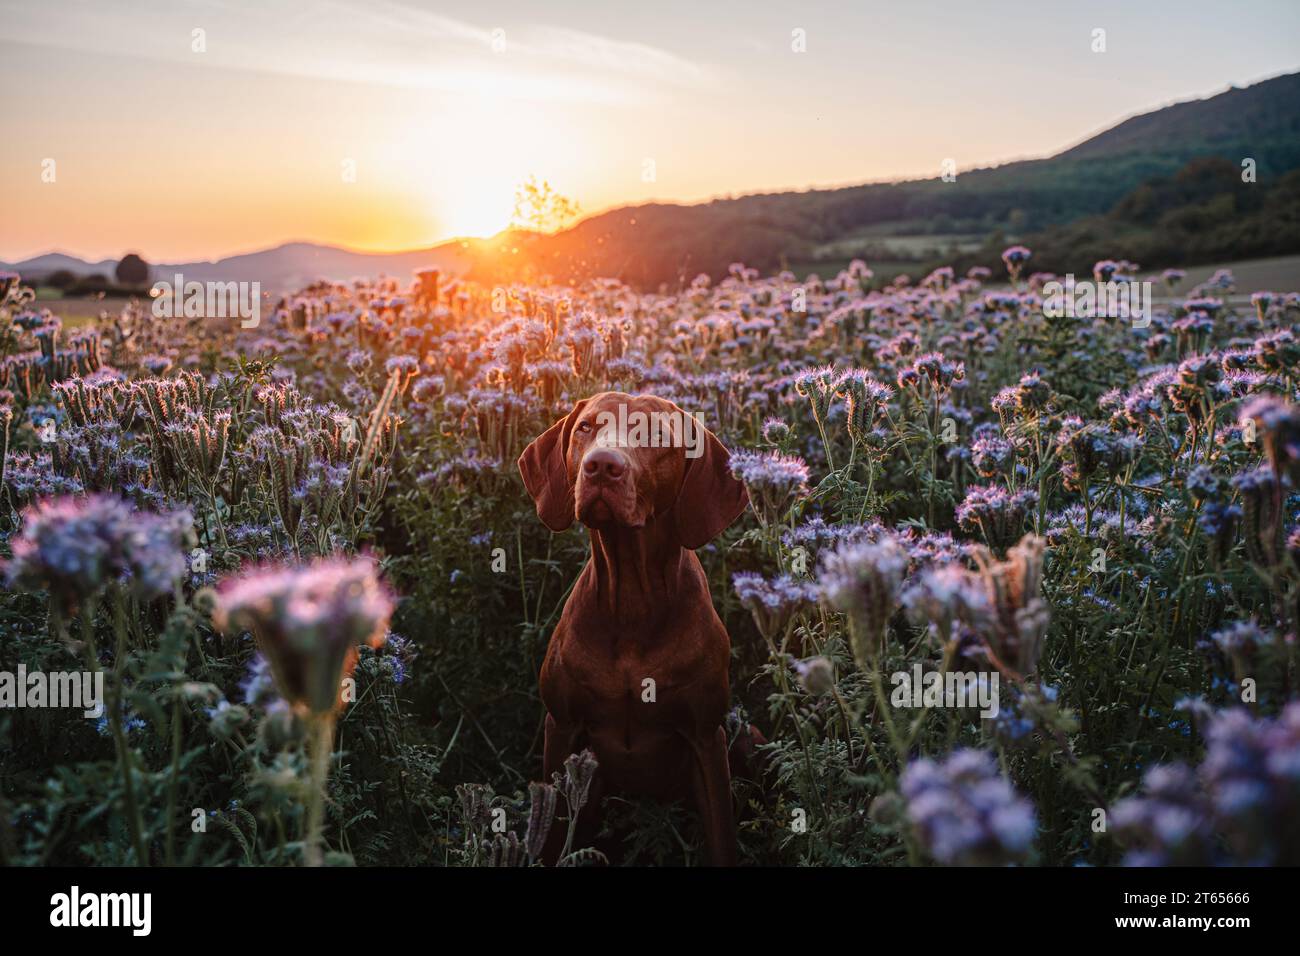 Romantisches Porträt eines magyar vizsla Hundes in einer wunderschönen Landschaft mit blühenden Blumen bei Sonnenuntergang Stockfoto